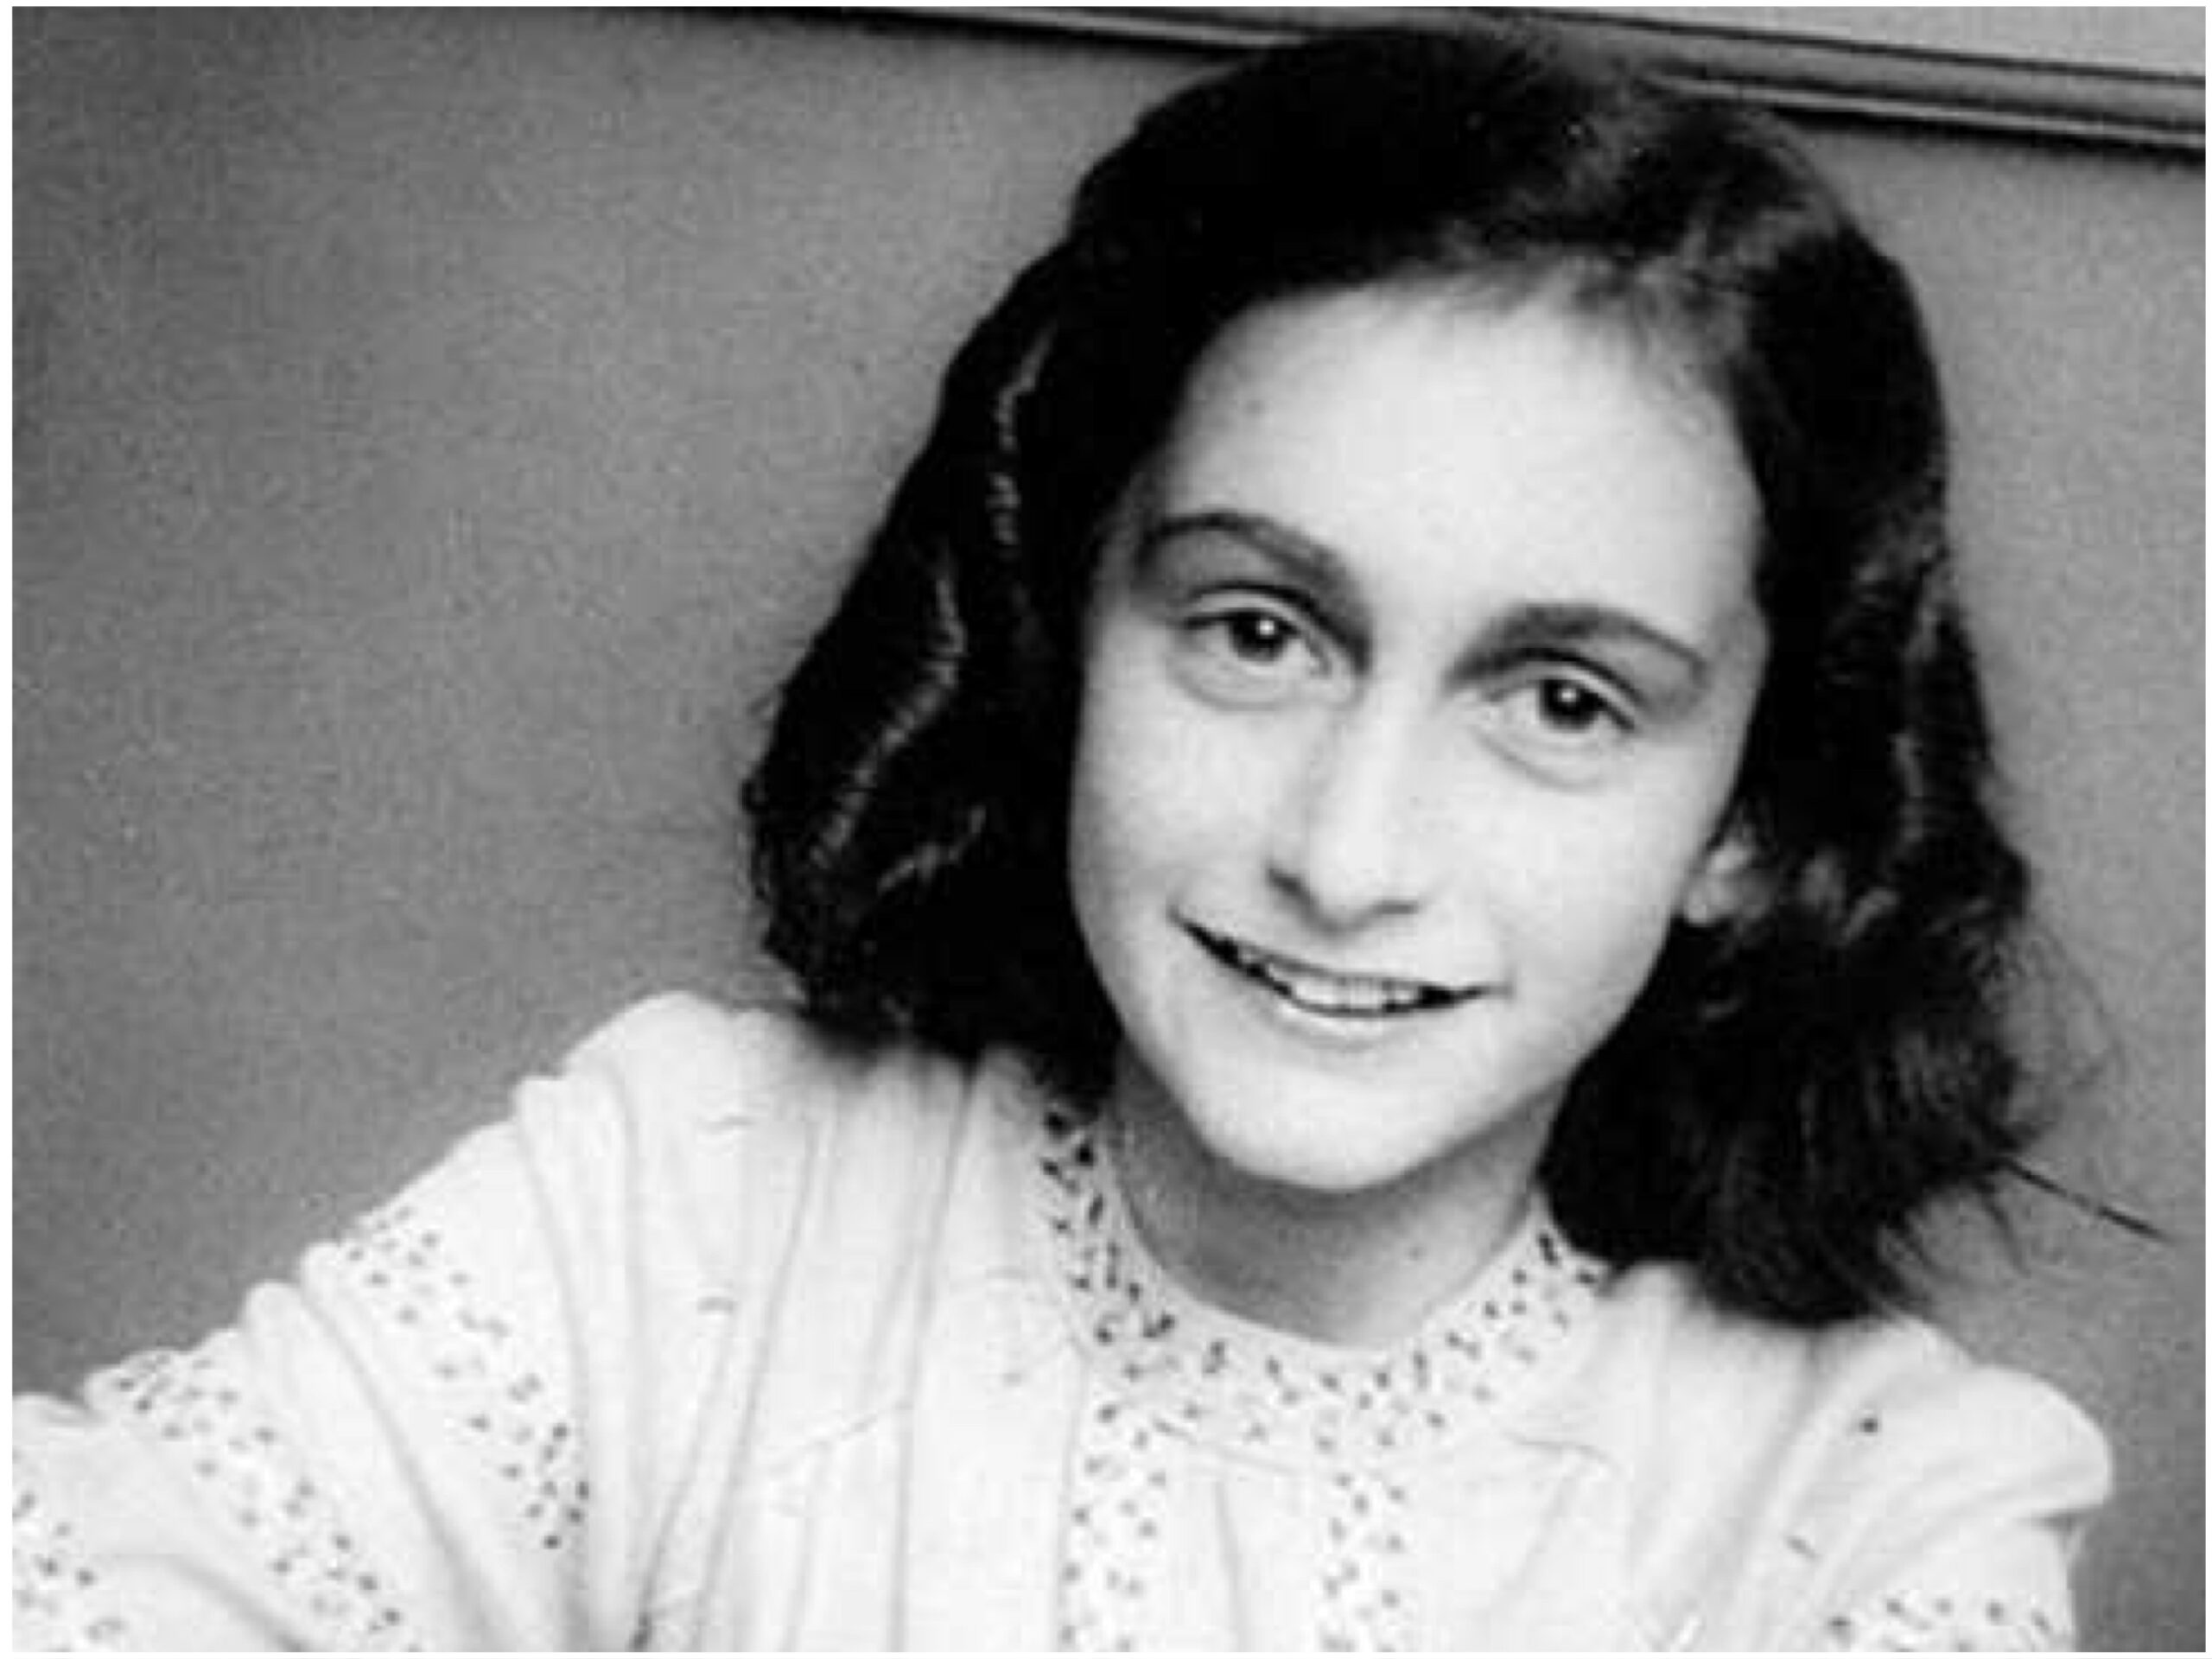 Schwarz-Weiß-Porträt der Anne Frank: junges Mädchen mit schwarzen schulterlangen Haaren, in die Kamera lächelnd